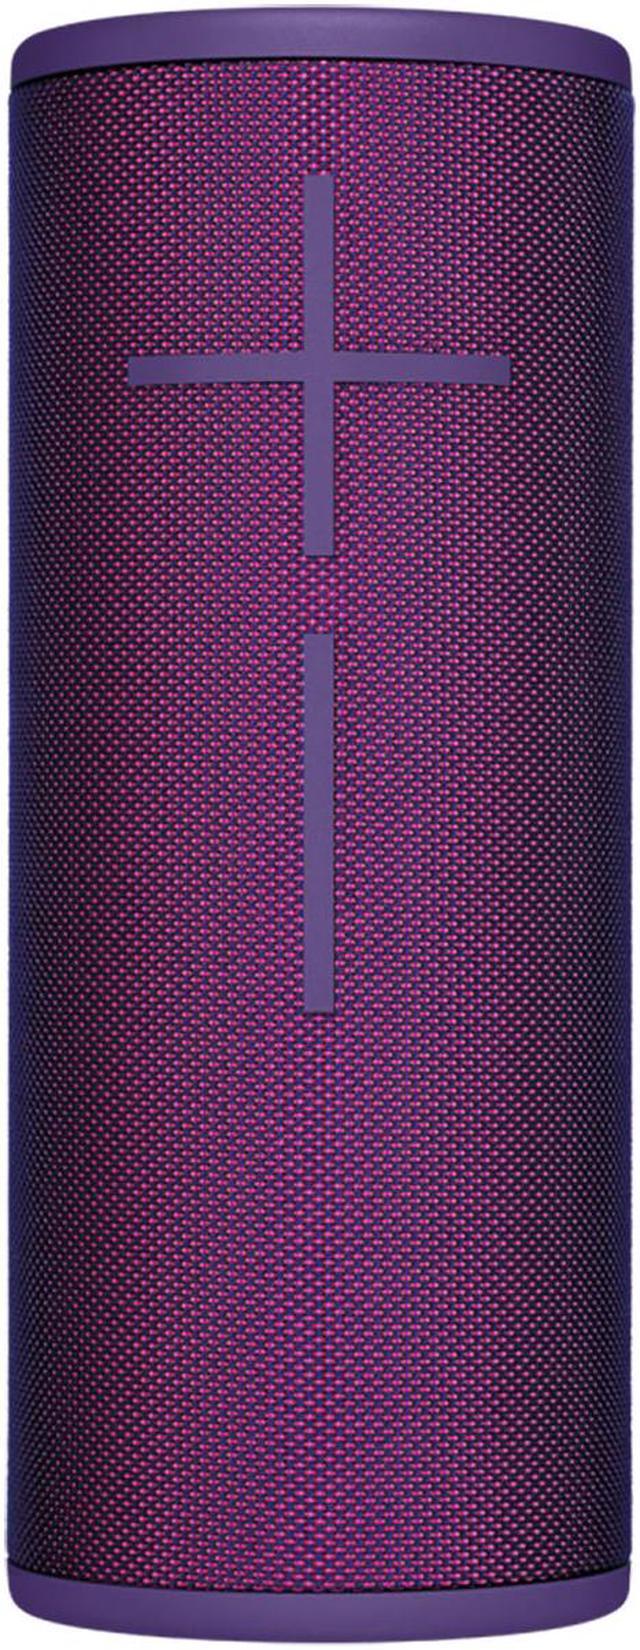 Ultimate Ears Boom 3 Portable Waterproof Bluetooth Speaker - Ultraviolet  Purple